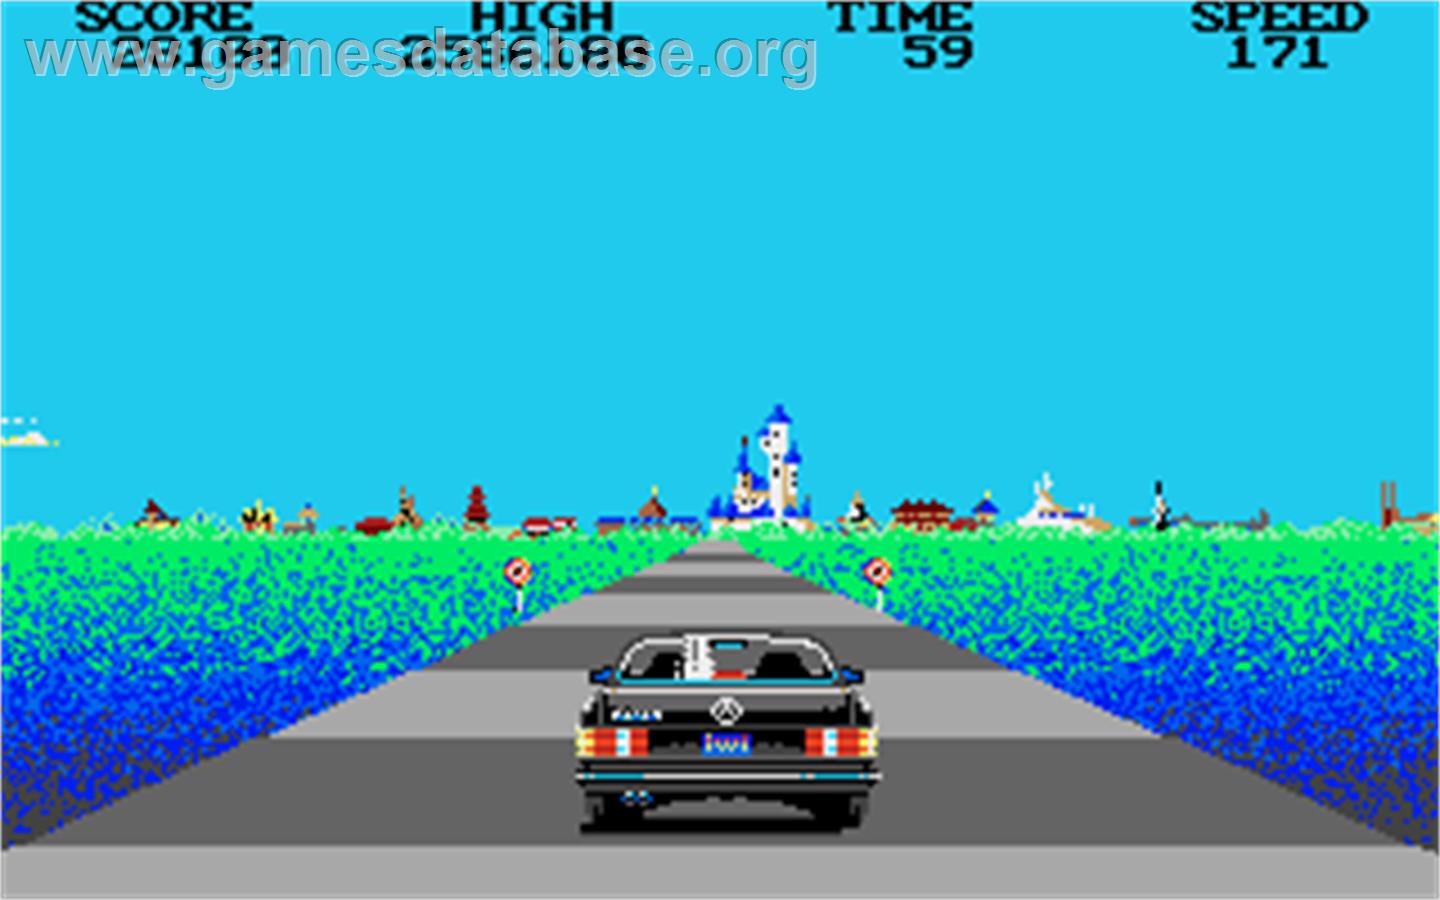 Crazy Cars 2 - Atari ST game